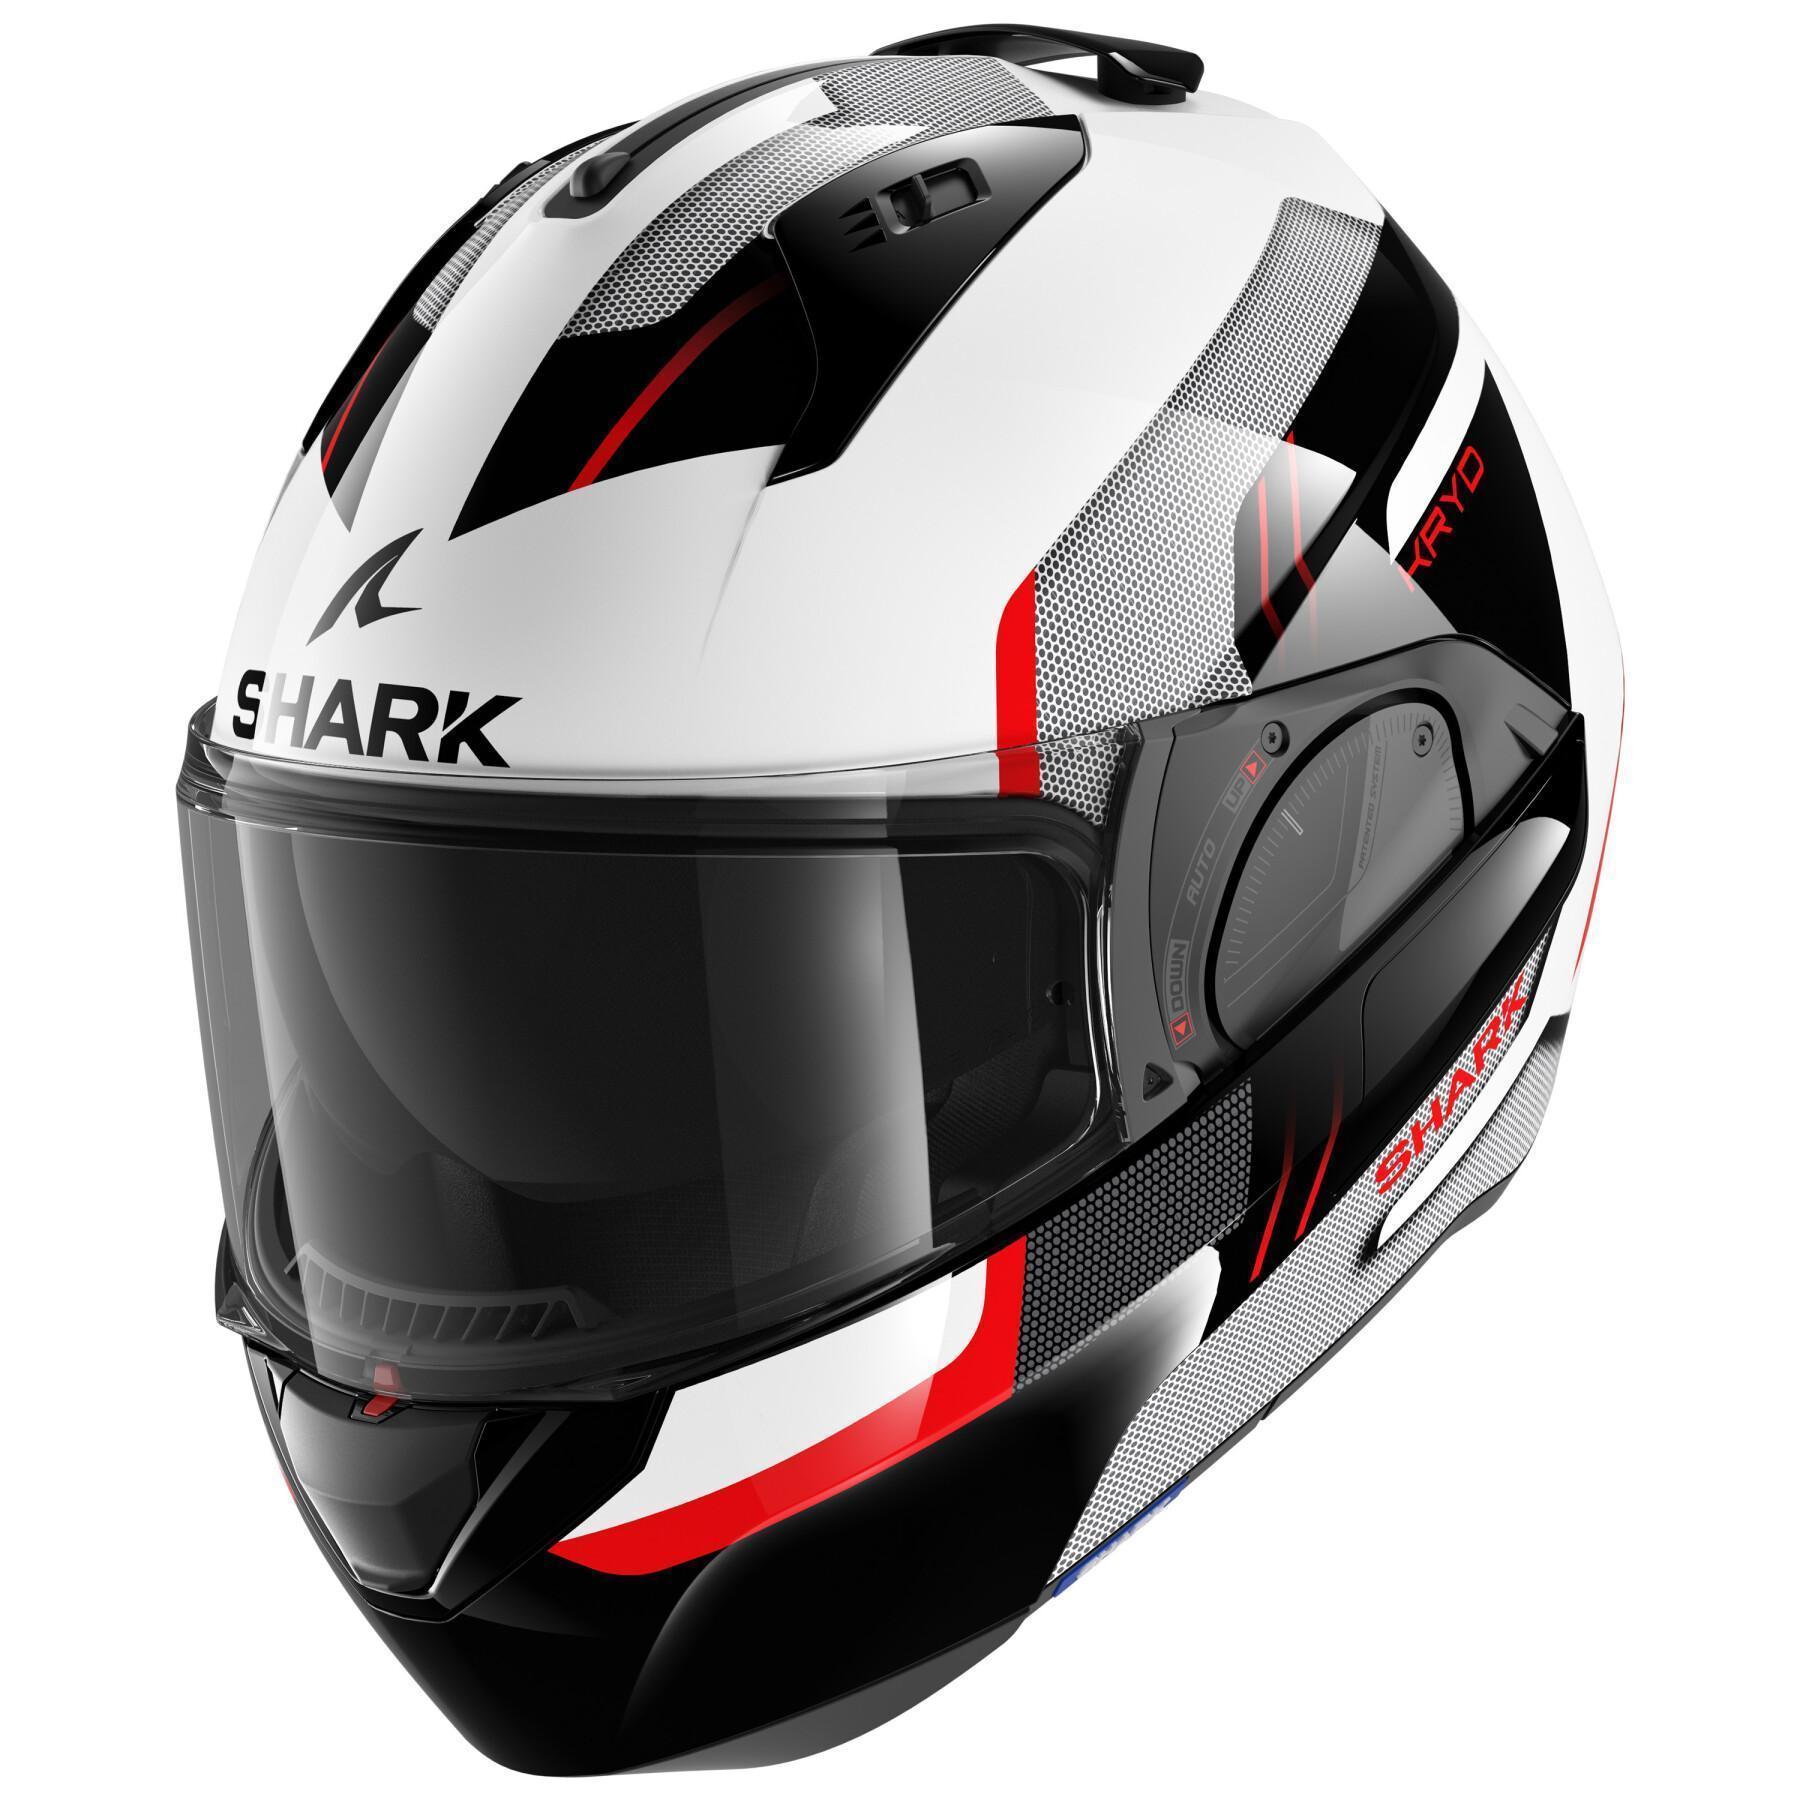 Modular motorcycle helmet Shark Evo Es Kryd White Black Red